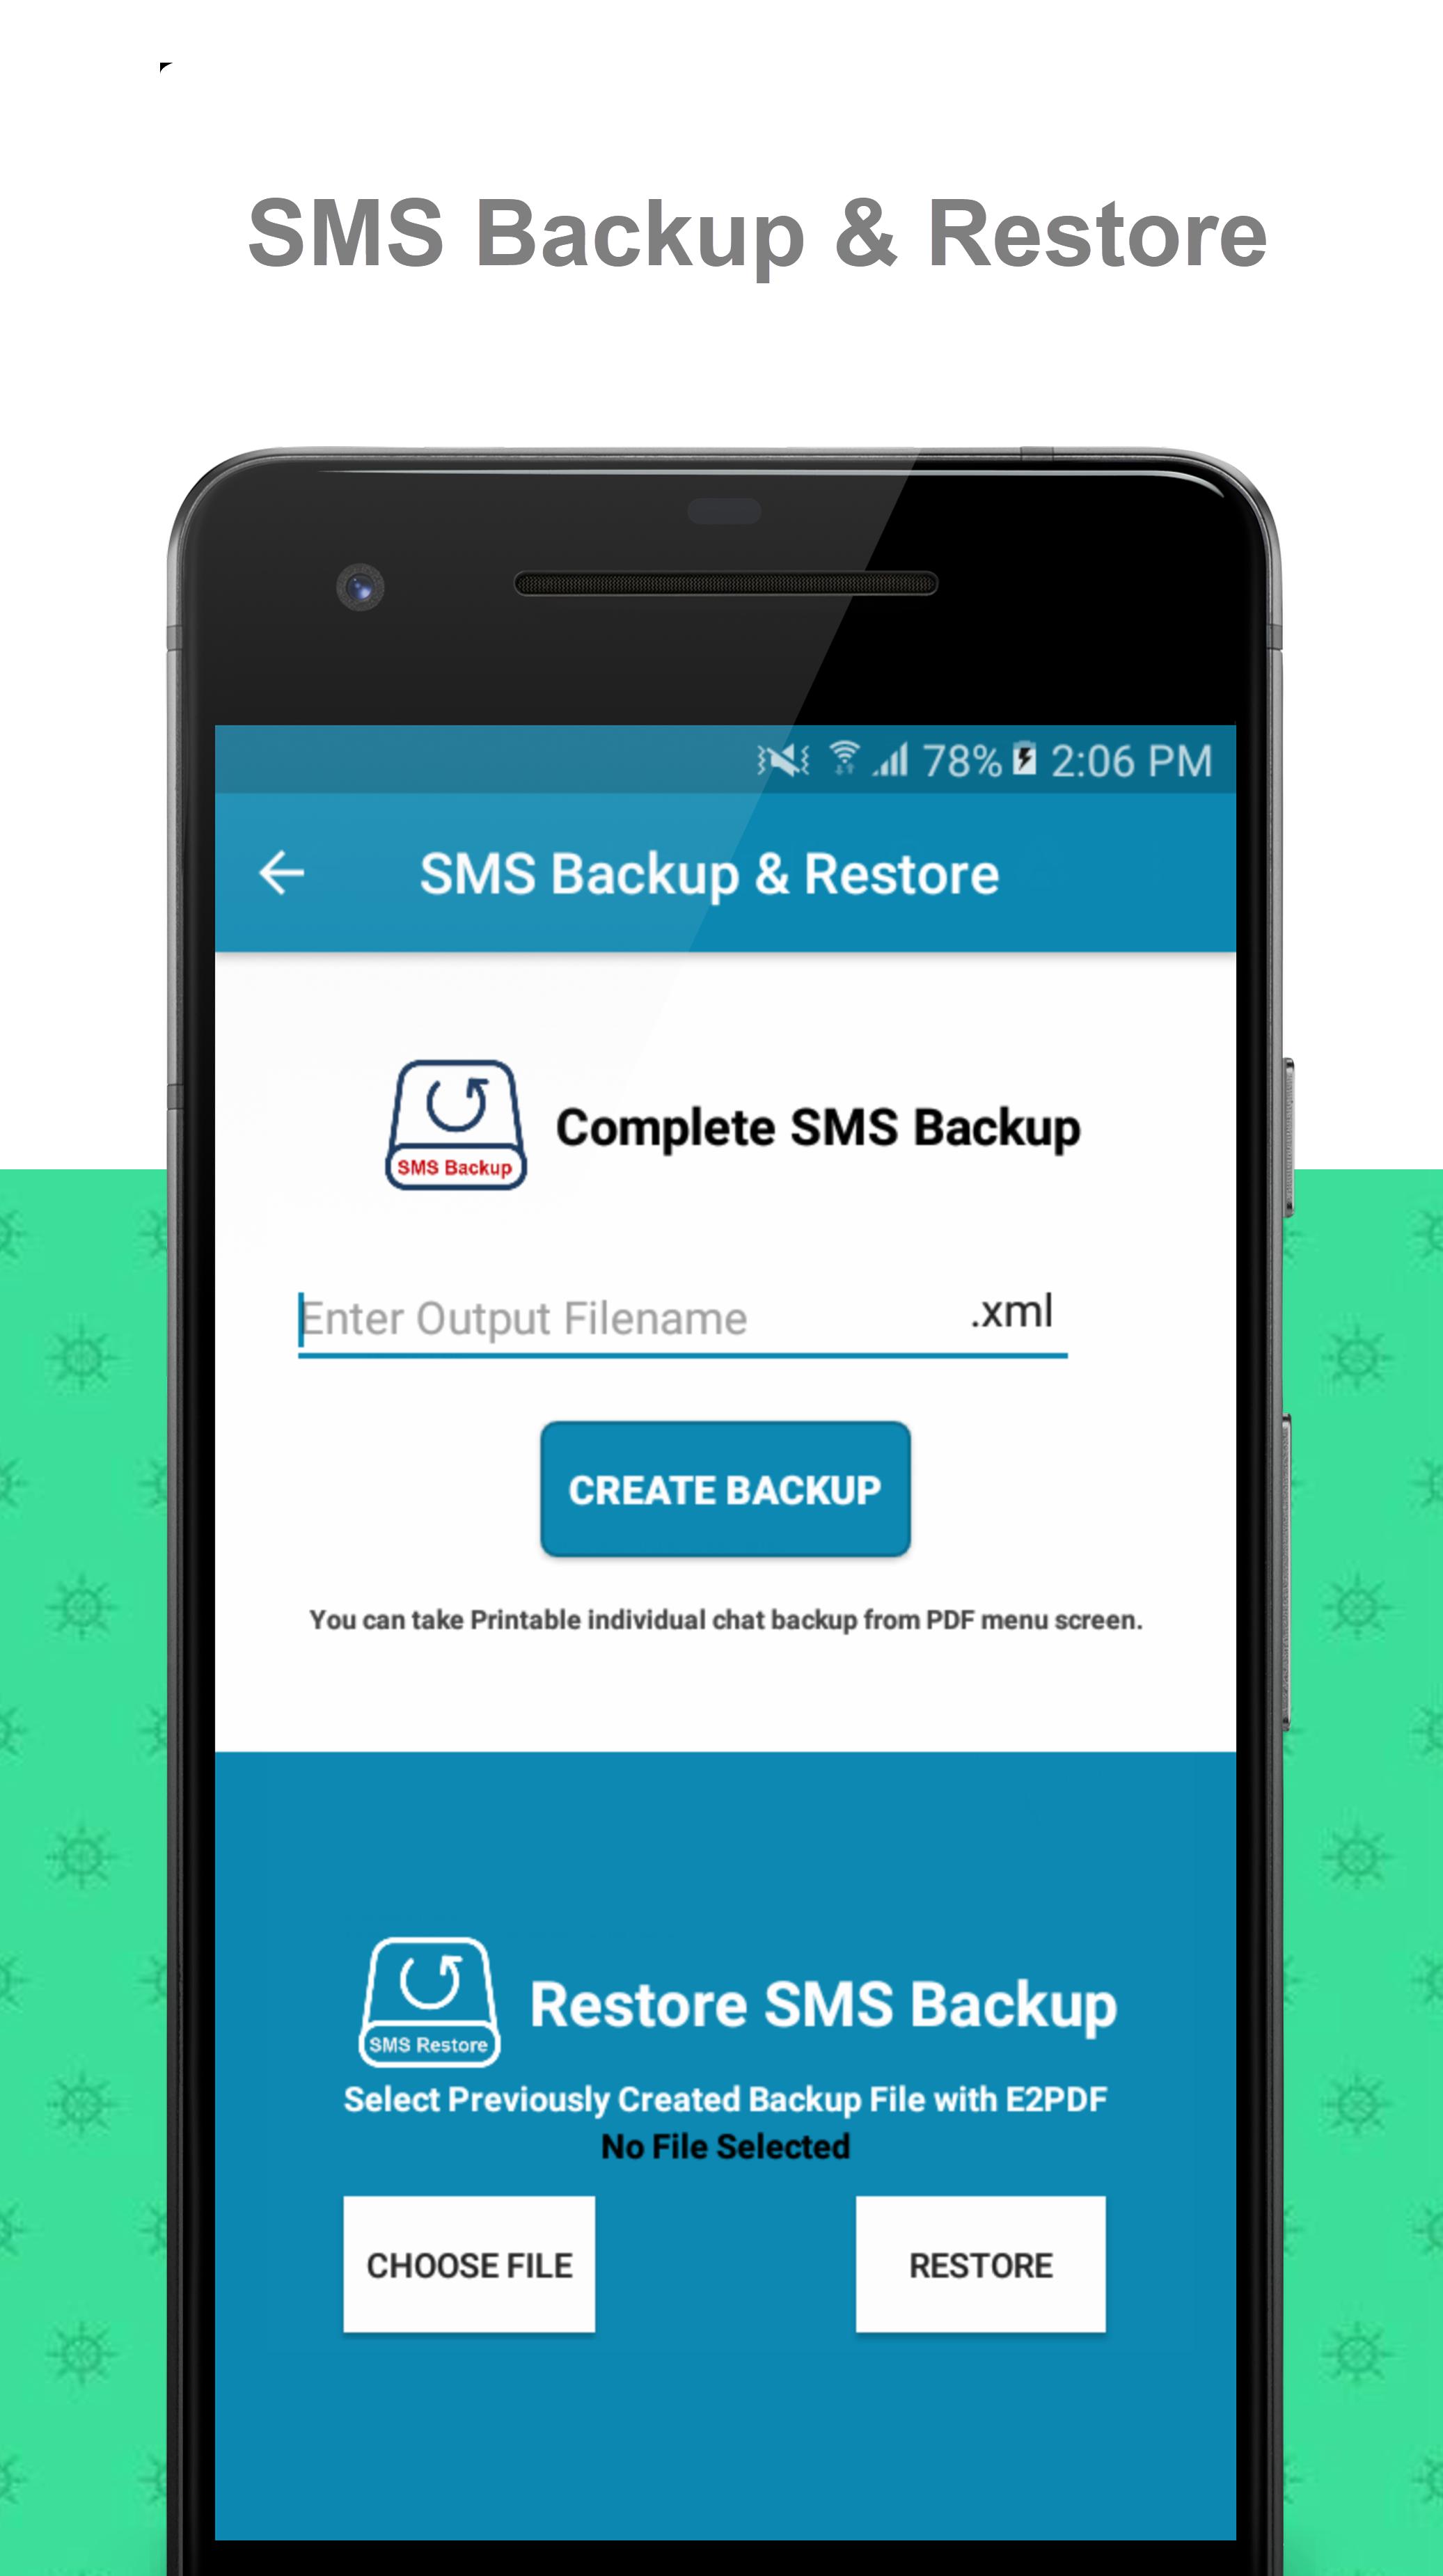 E2PDF - Backup Restore SMS,Call,Contact,TrueCaller 19.08.2020 Screenshot 2